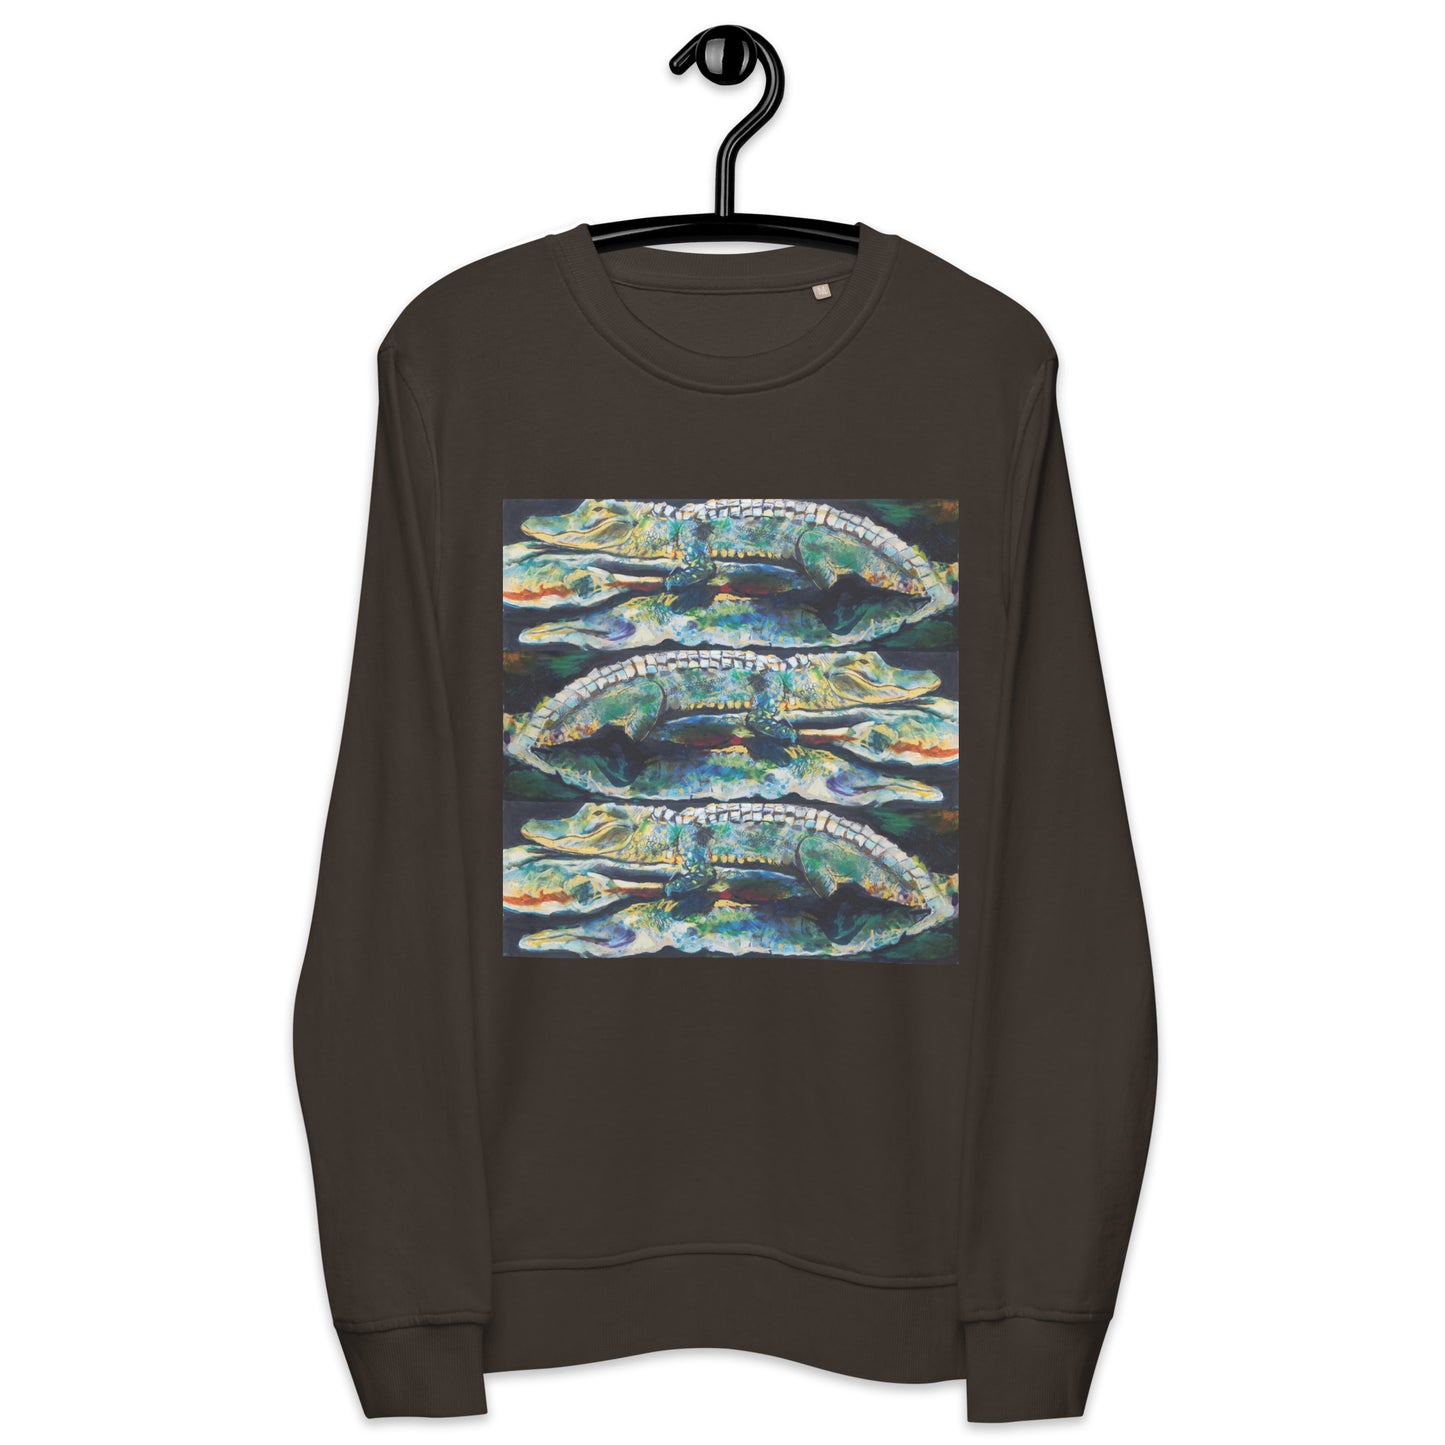 Psychedelic Gator Reflection Unisex organic sweatshirt